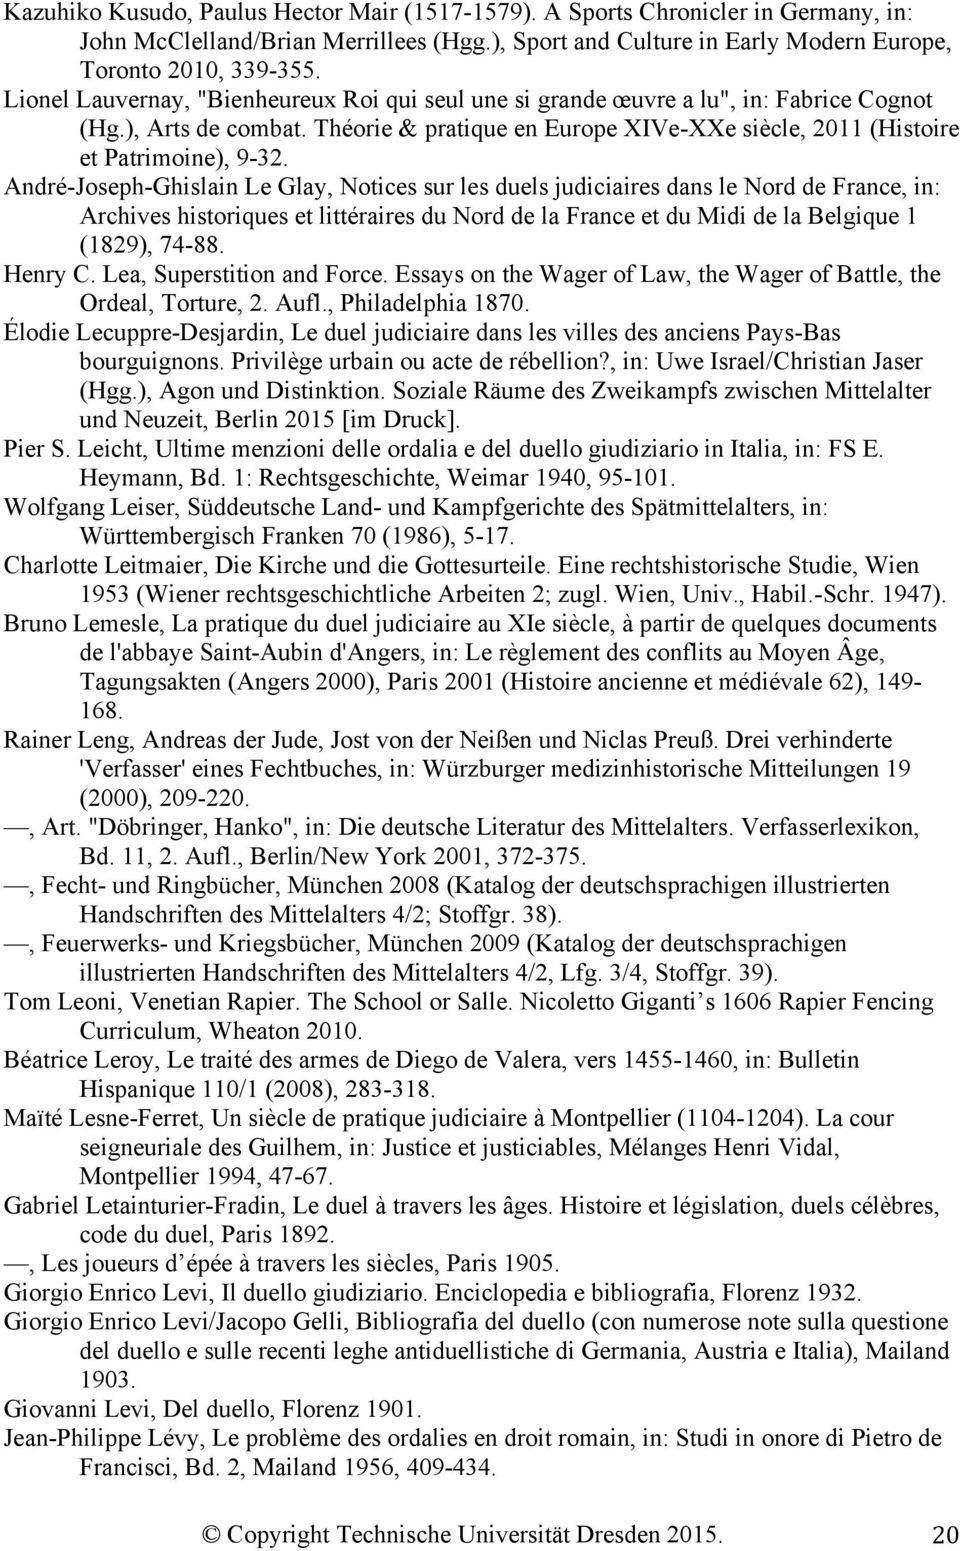 André-Joseph-Ghislain Le Glay, Notices sur les duels judiciaires dans le Nord de France, in: Archives historiques et littéraires du Nord de la France et du Midi de la Belgique 1 (1829), 74-88.